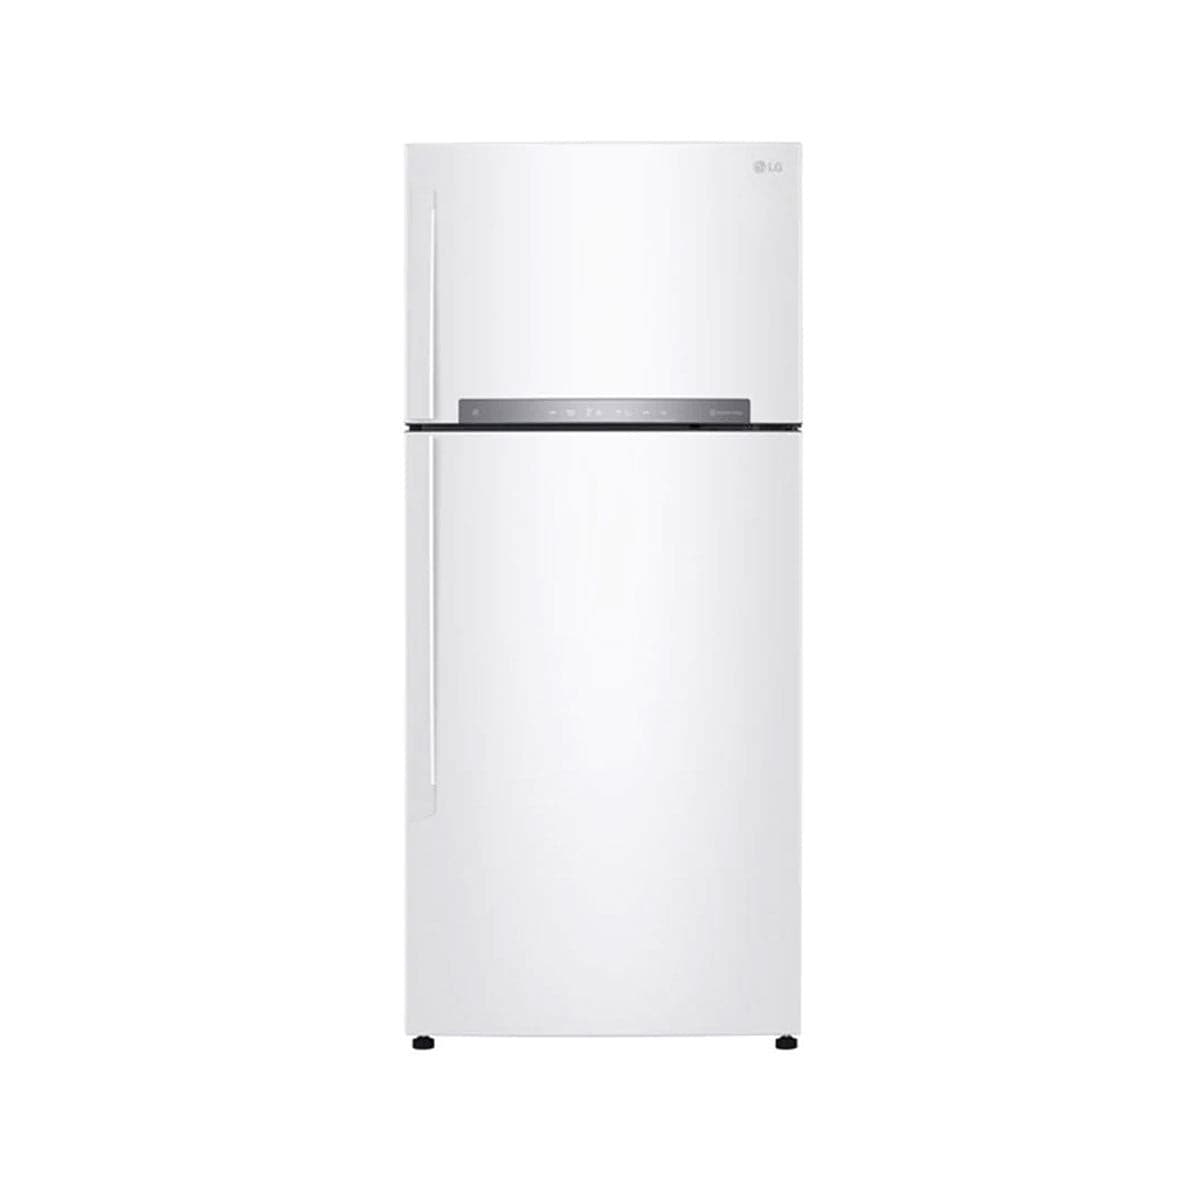 Сайт днс холодильники. Холодильник LG 702. Холодильник LG С верхней морозильной камерой no Frost. Холодильник LG ноу Фрост. Холодильник LG 502 HEHZ.